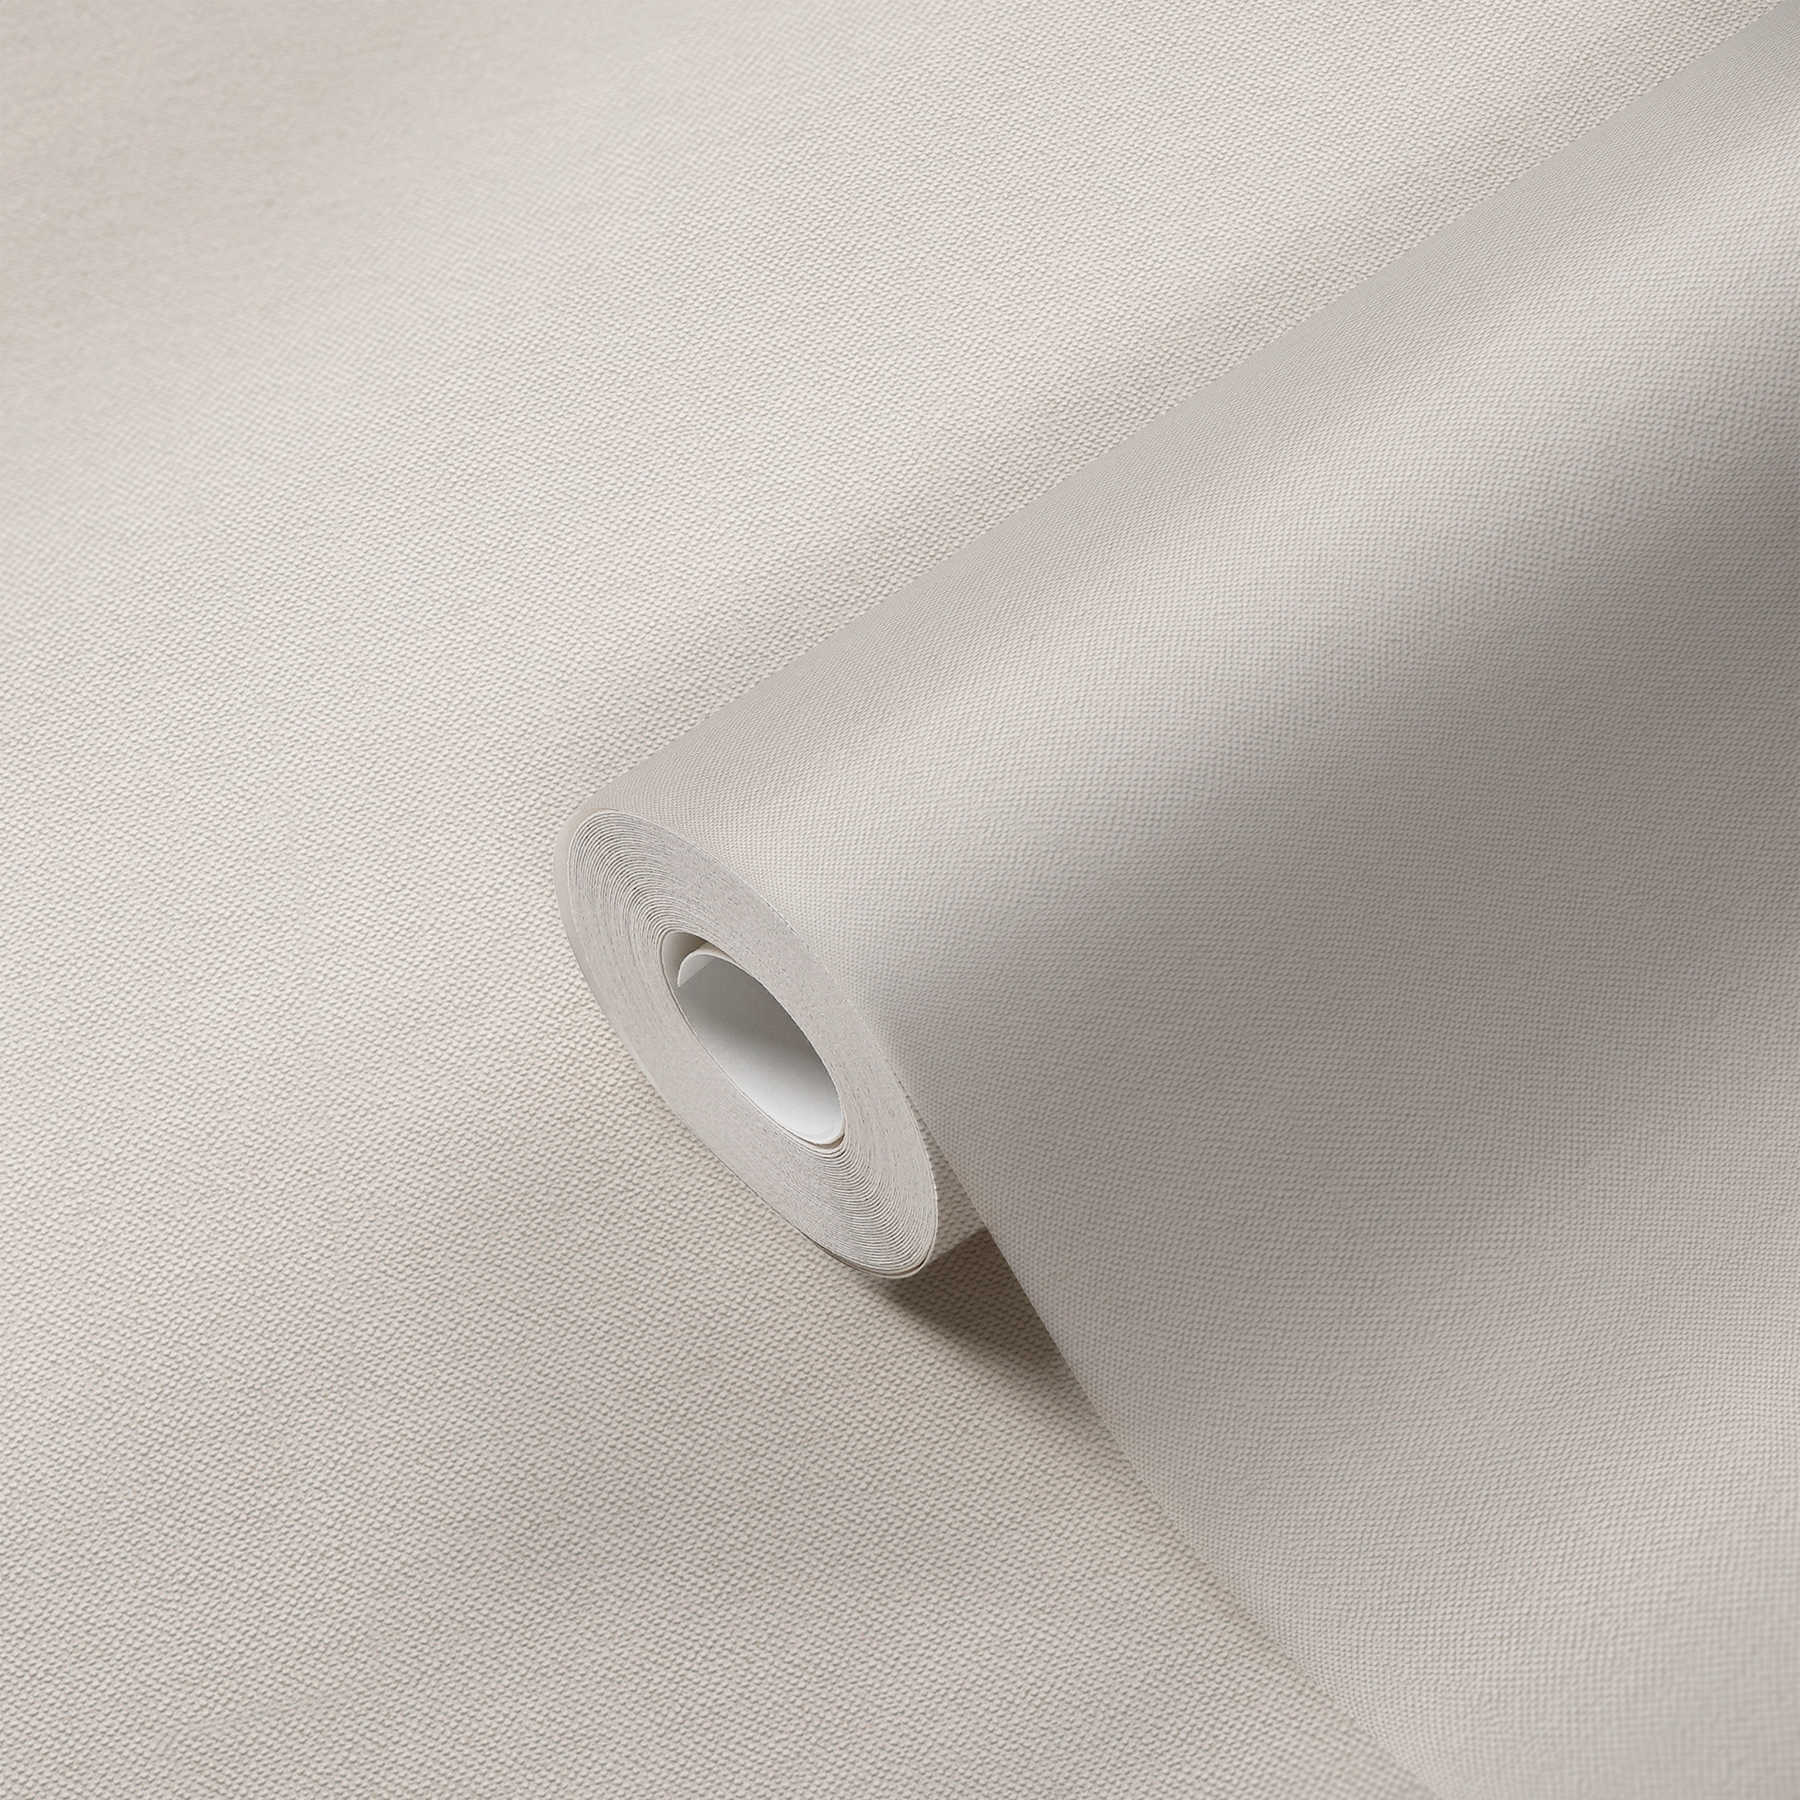             Papier peint uni crème avec structure textile au design élégant
        